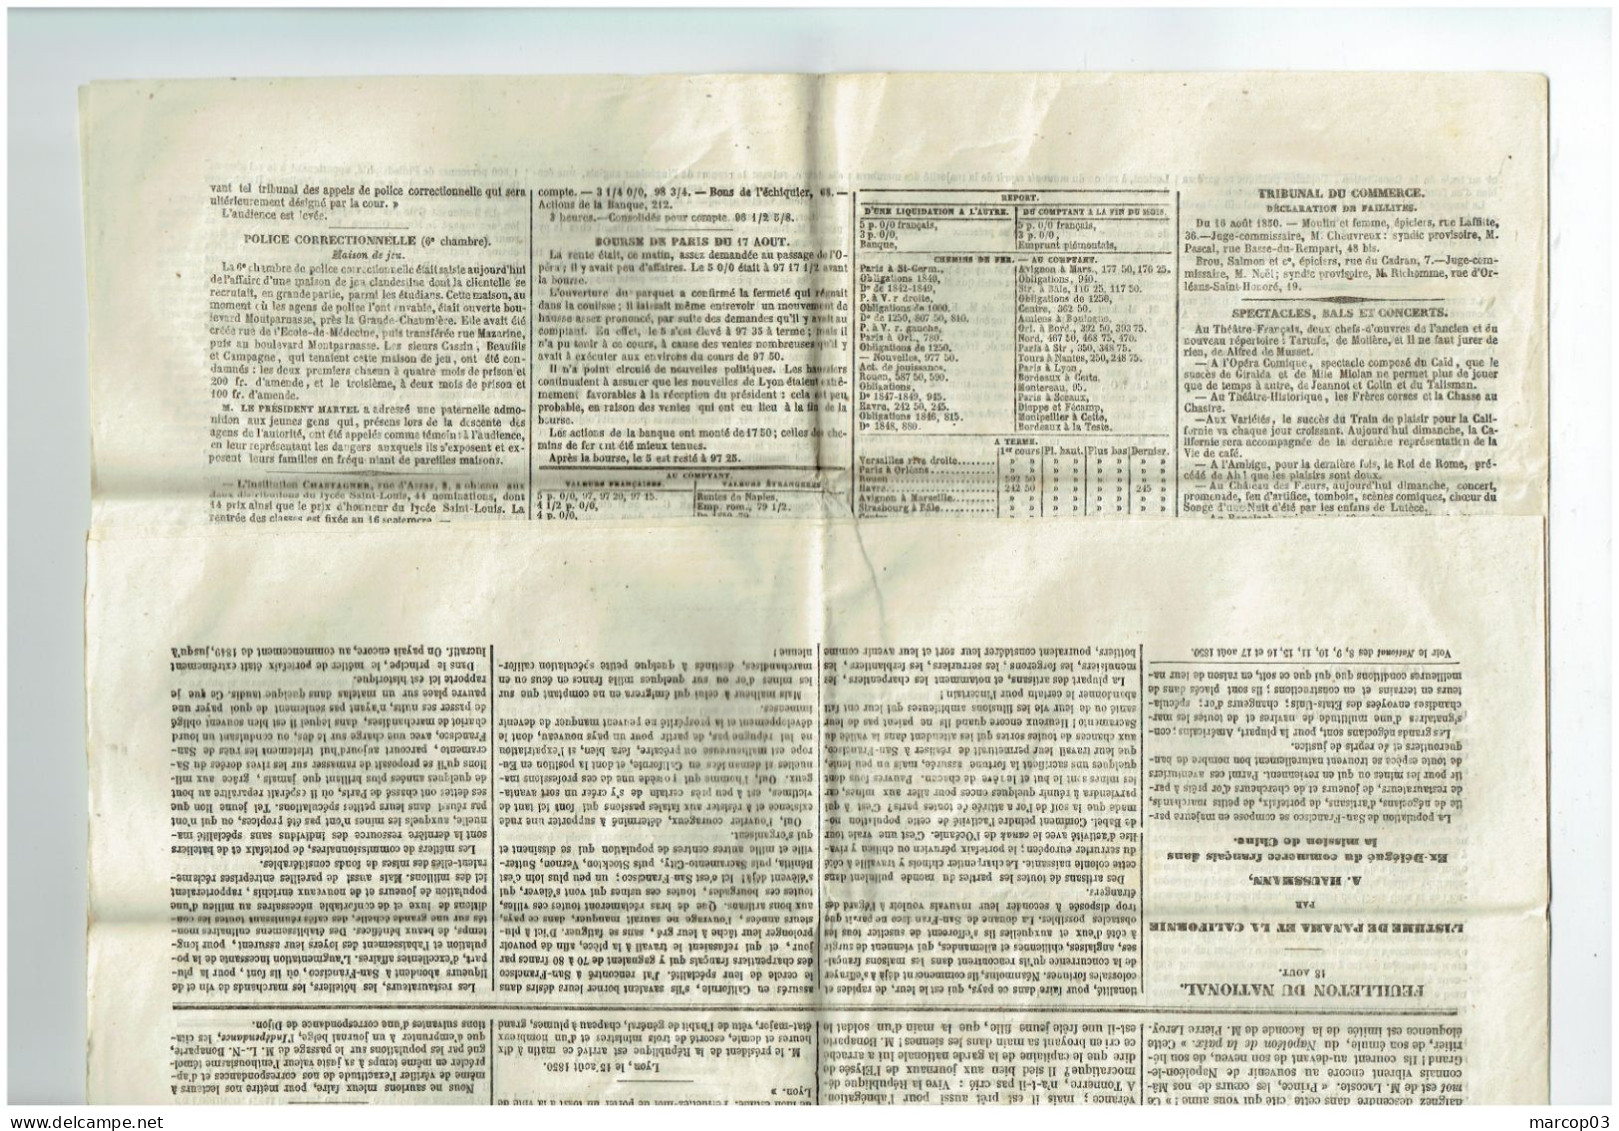 75 PARIS Journal Le Nationale Du 18/08/1850  Droit Fiscal De Timbre De 4 C Rouge SEINE Journal Complet SUP - Journaux